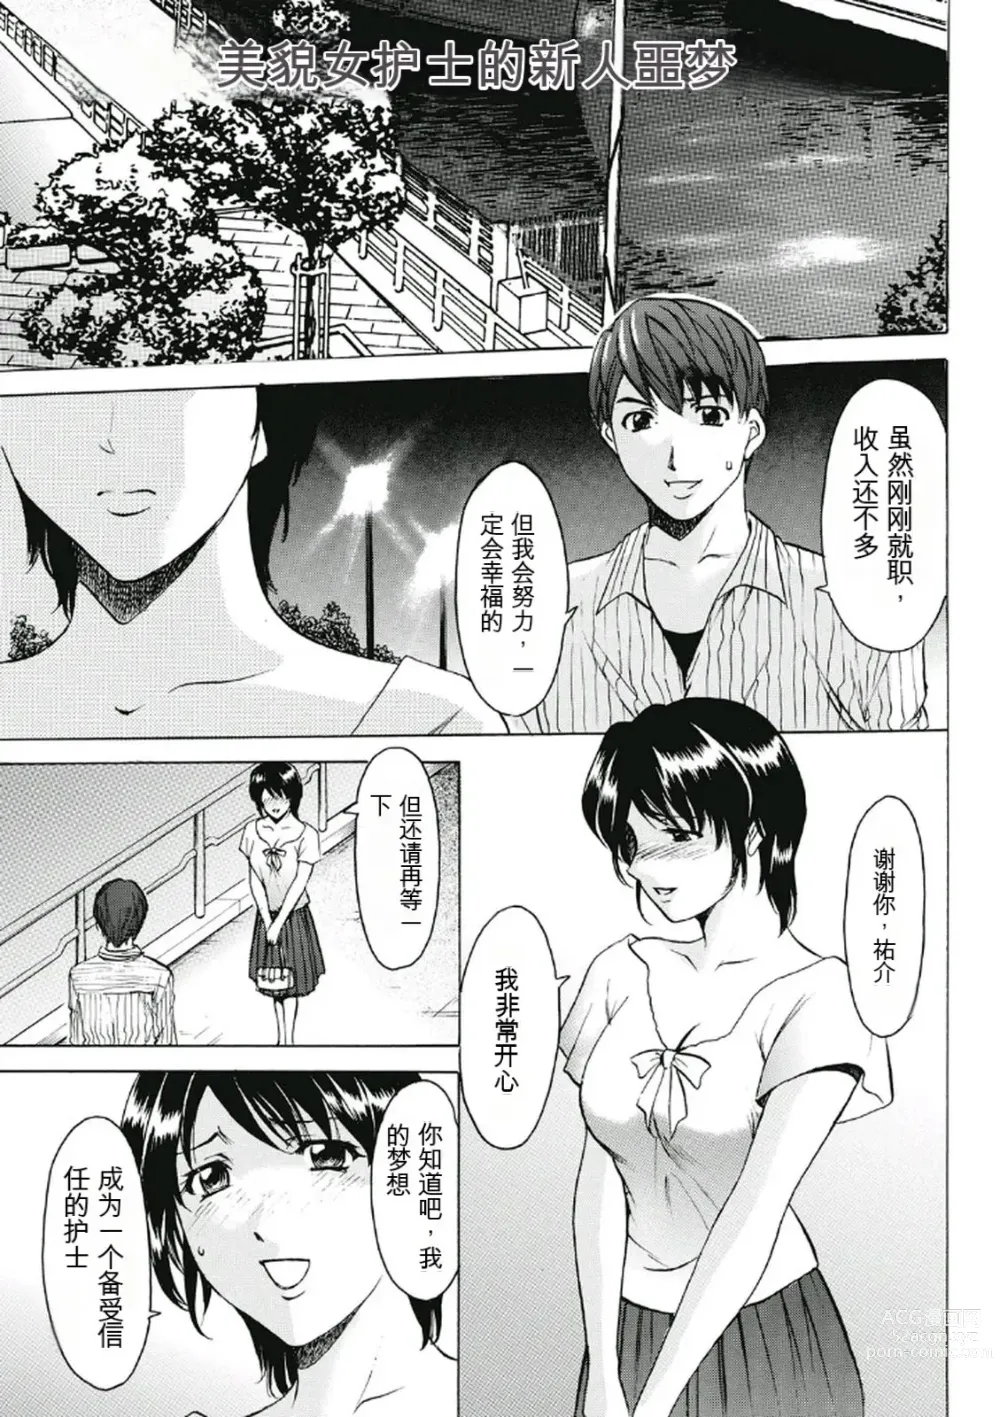 Page 3 of manga Chijoku Byoutou -Hakui no Datenshi-